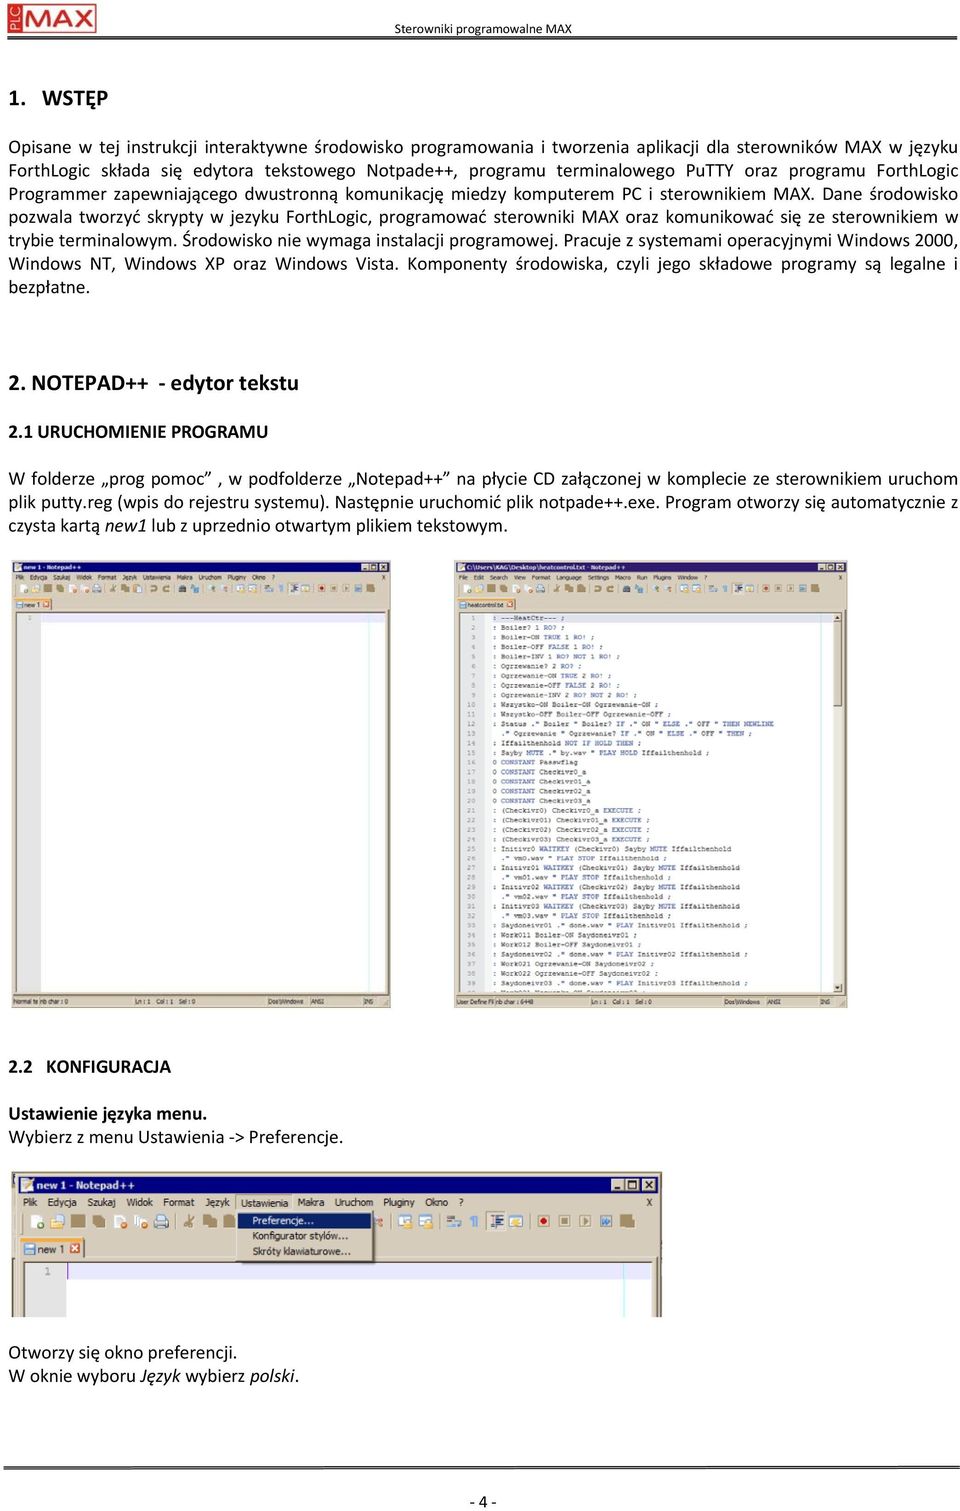 PuTTY oraz programu ForthLogic Programmer zapewniającego dwustronną komunikację miedzy komputerem PC i sterownikiem MAX.